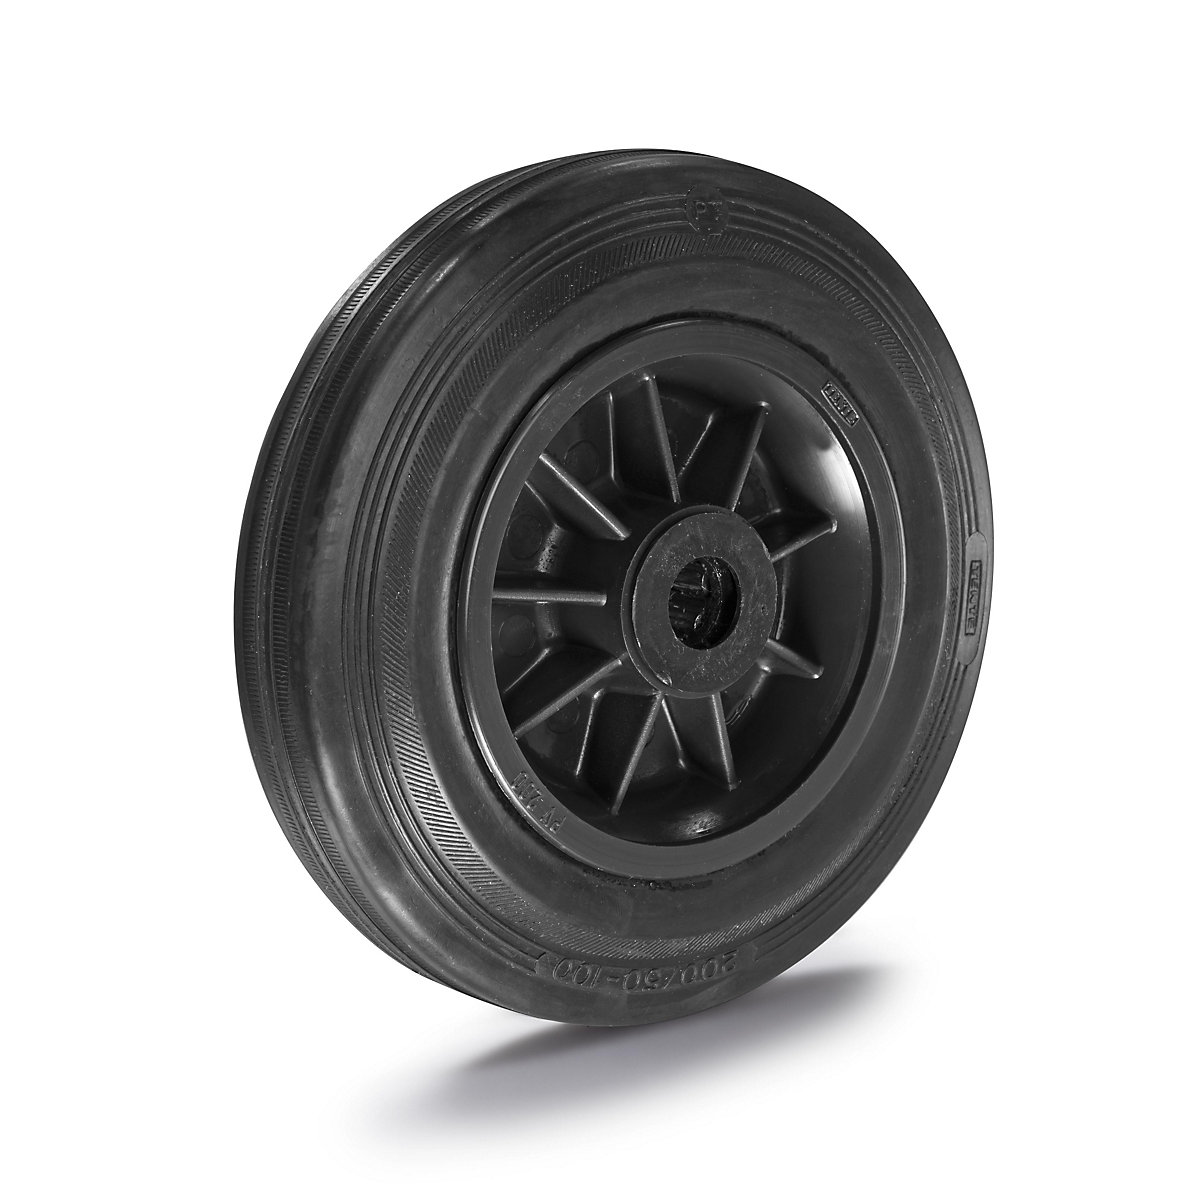 Solid rubber wheel, plastic rim - TENTE